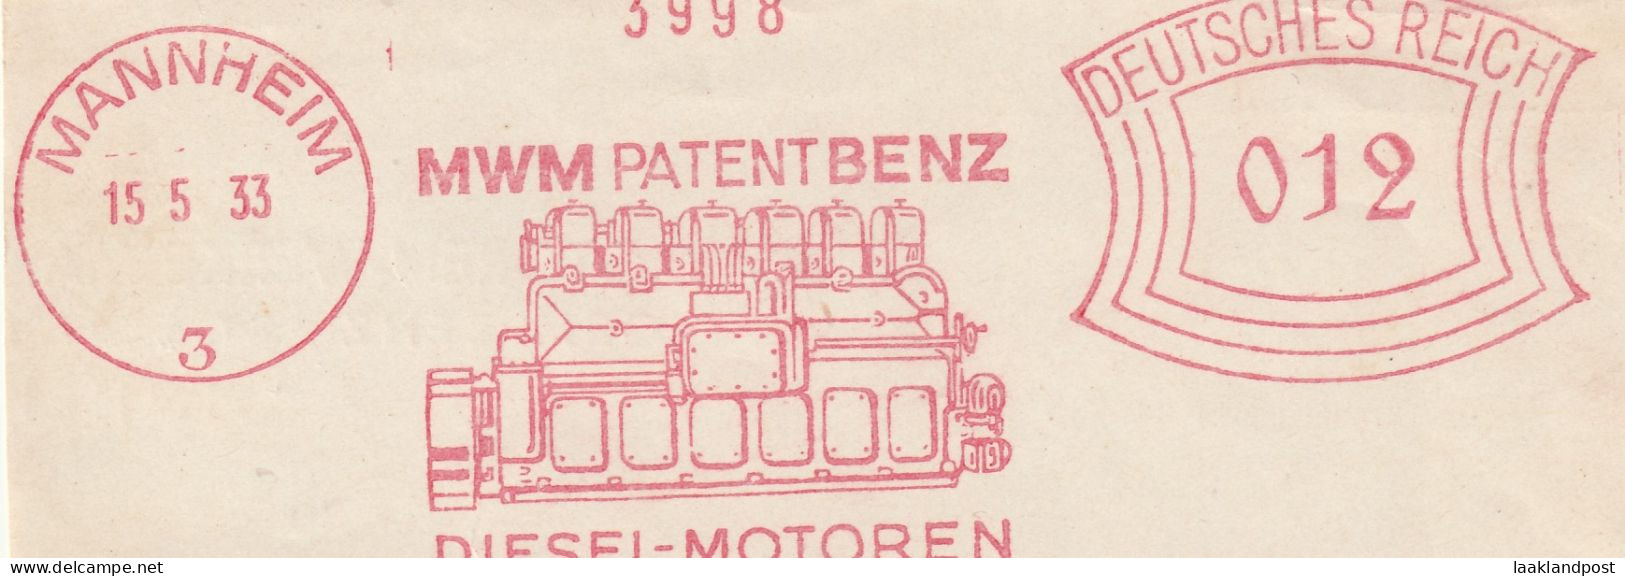 Deutsche Reichpost Nice Cut Meter Freistempel MWM Patent Benz Diesel Motoren, Mannheim 15-5-1933 - Franking Machines